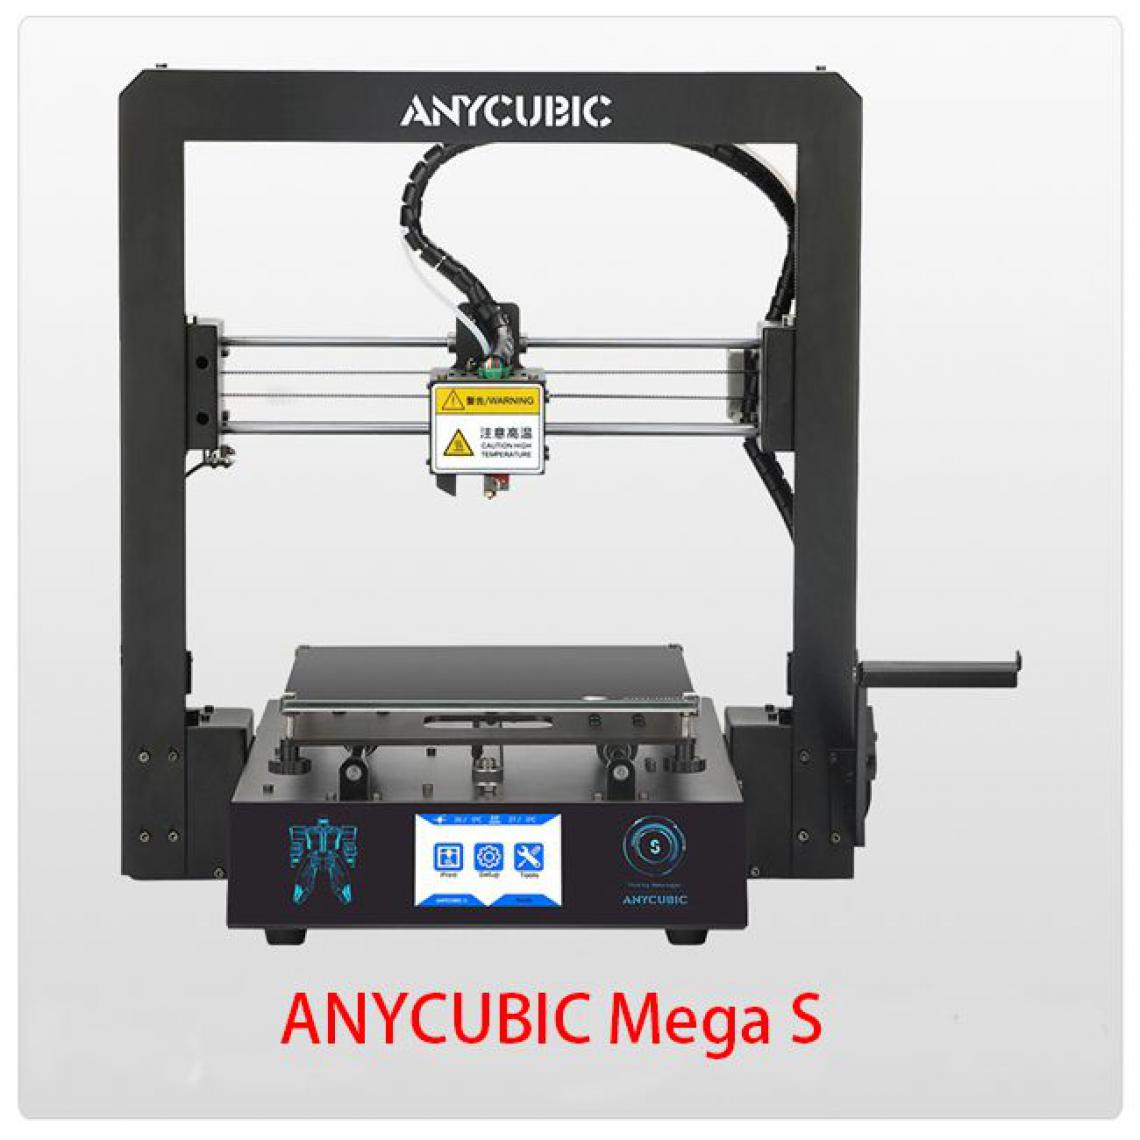 Generic - Imprimante 3D ANYCUBIC i3 Mega S  avec à 1 Tête d'Impression  PLA, ABS, TPU,PETG et Cadre Entièrement Métallique 21 * 21 * 20.5 cm - Noir  - Imprimante 3D